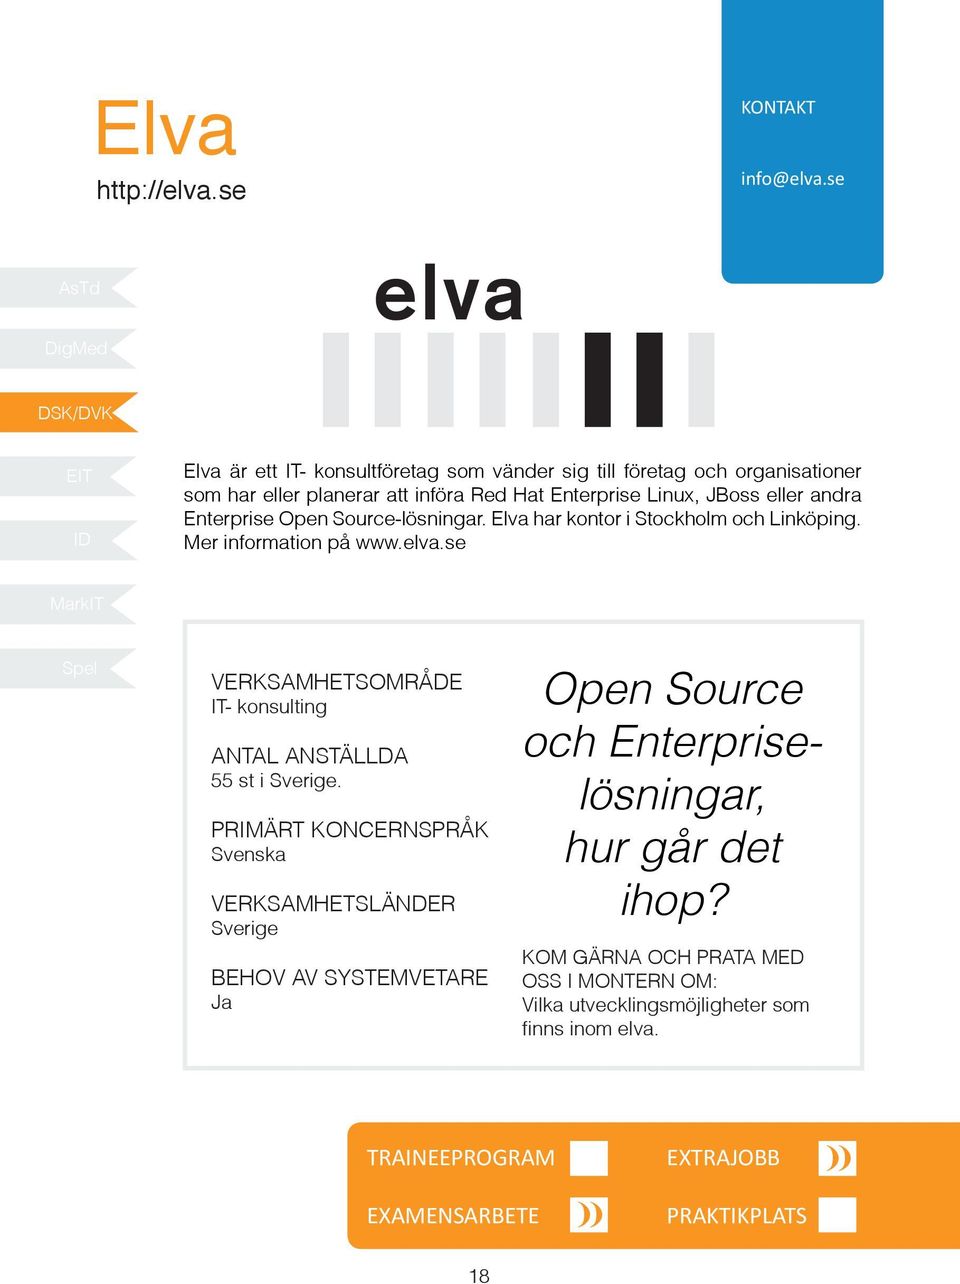 Hat Enterprise Linux, JBoss eller andra Enterprise Open Source-lösningar. Elva har kontor i Stockholm och Linköping.